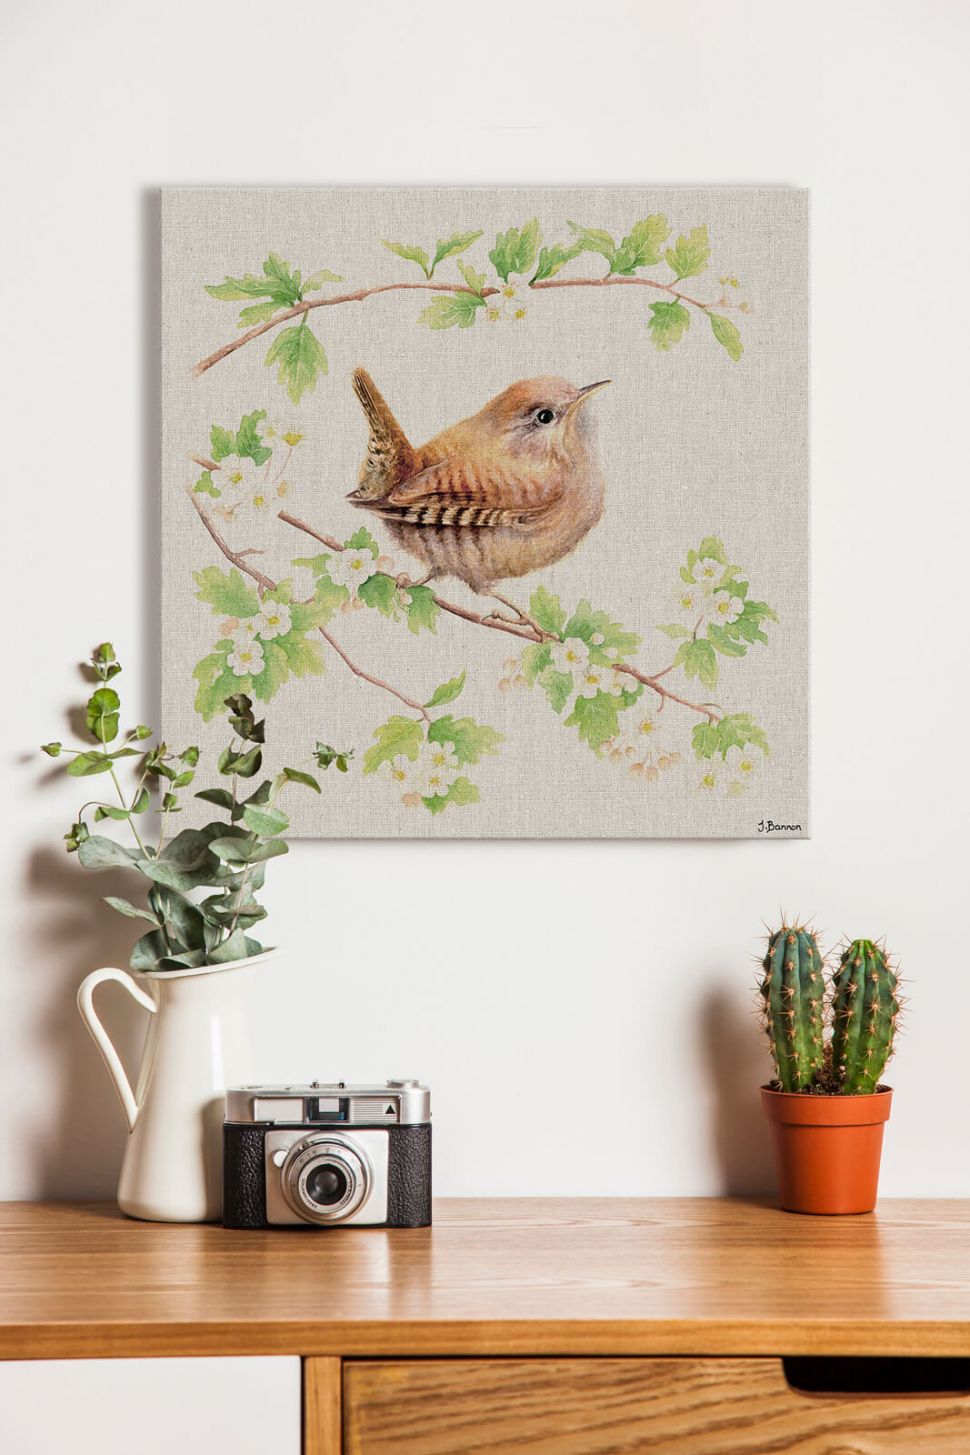 Obraz na płótnie Jenny Wren na ścianie w pokoju nad biurkiem z aparatem fotograficznym i kaktusem